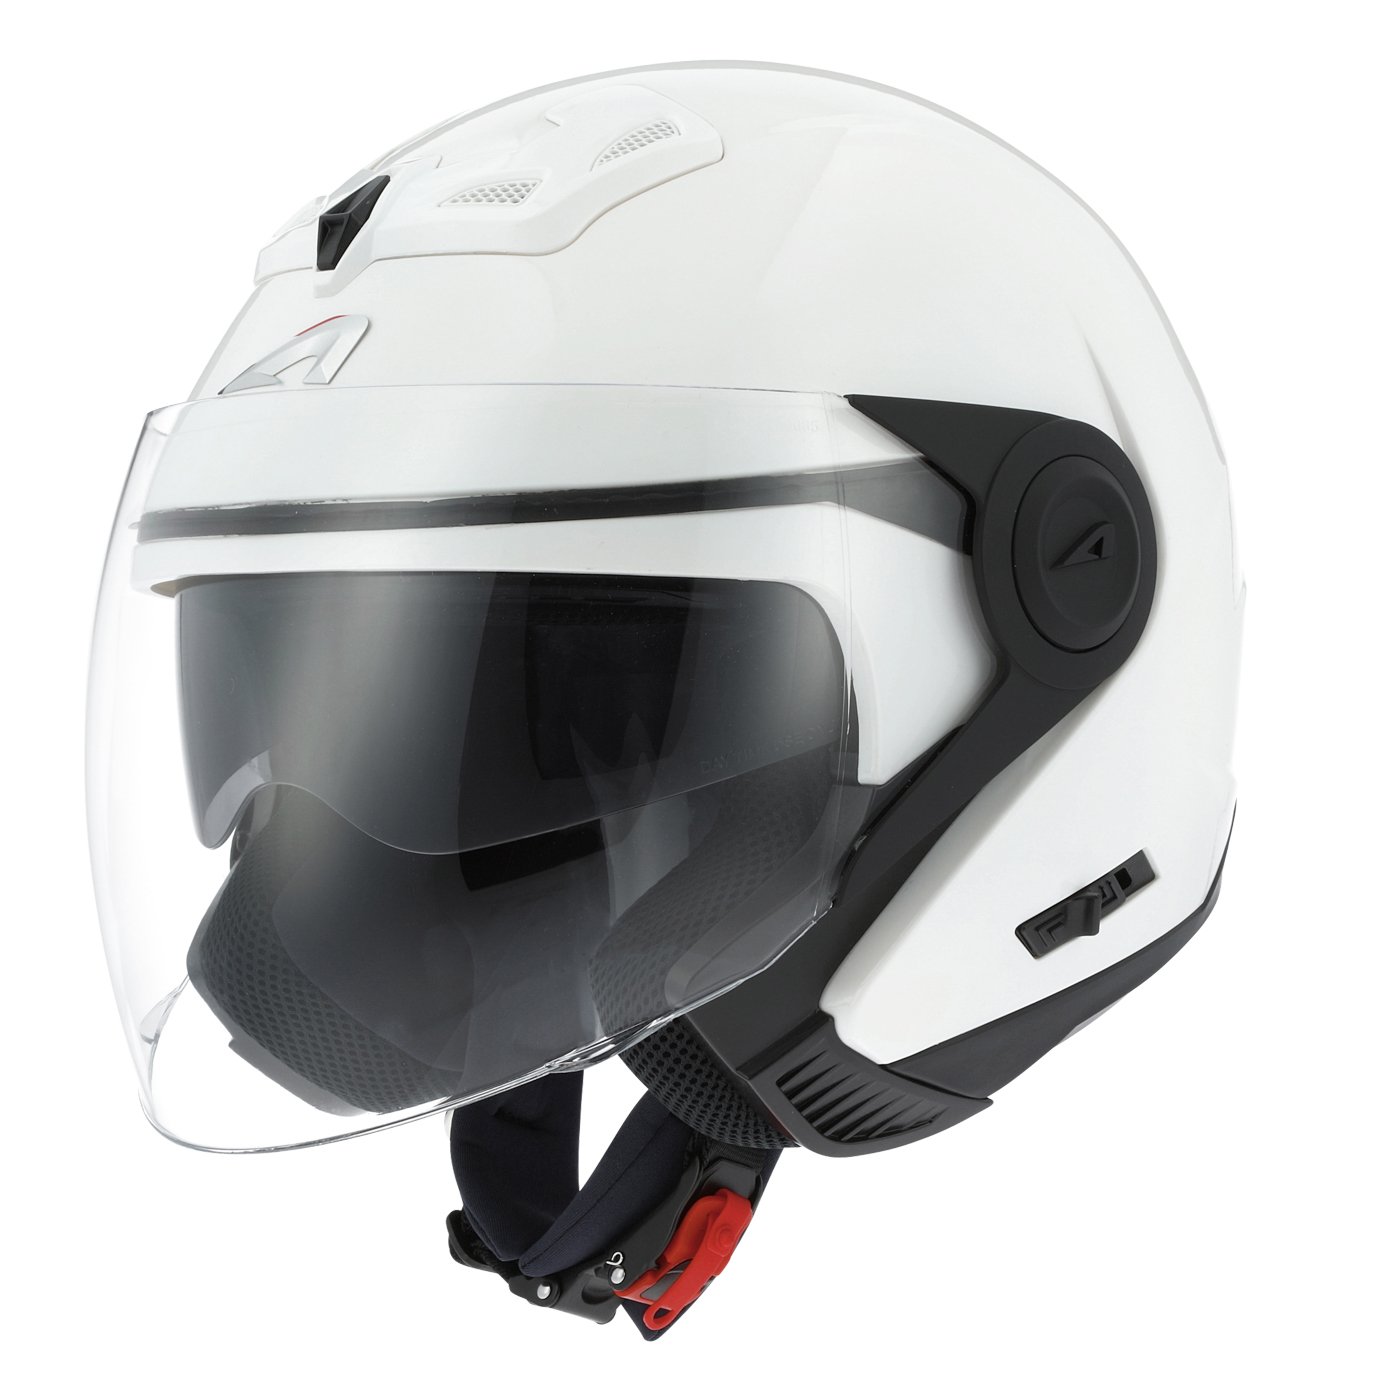 Astone Helmets - Casque jet DJ8 monocolor - Casque jet look rétro - Casque idéal en zone urbaine - Coque en polycarbonate -Gloss white XL von Astone Helmets